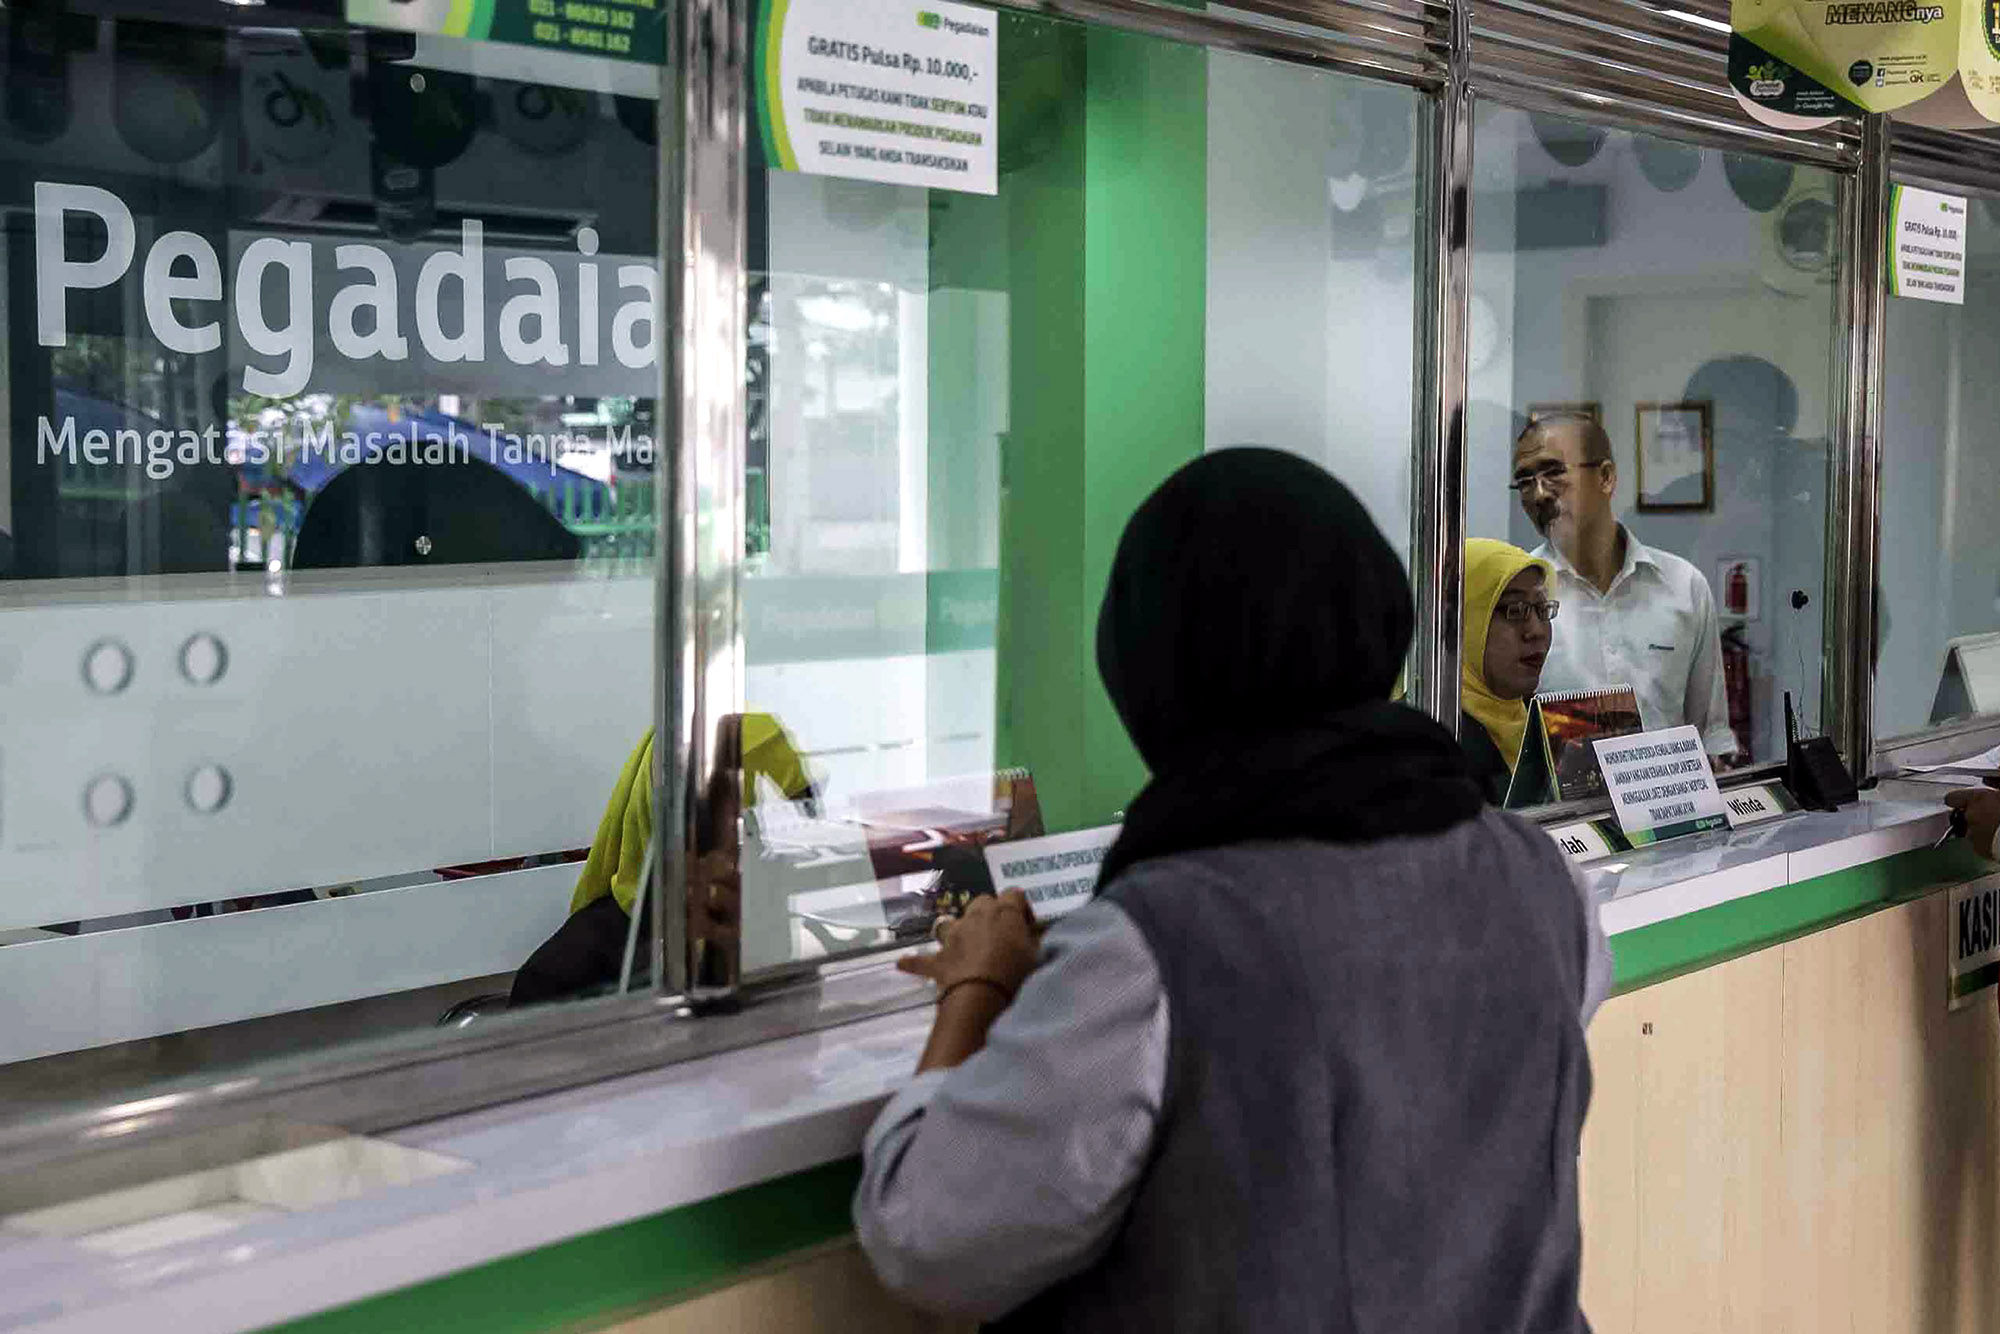 <p>Petugas melayani warga saat melakukan transaksi di gerai pegadaian Jakarta. Foto: Ismail Pohan/TrenAsia</p>
